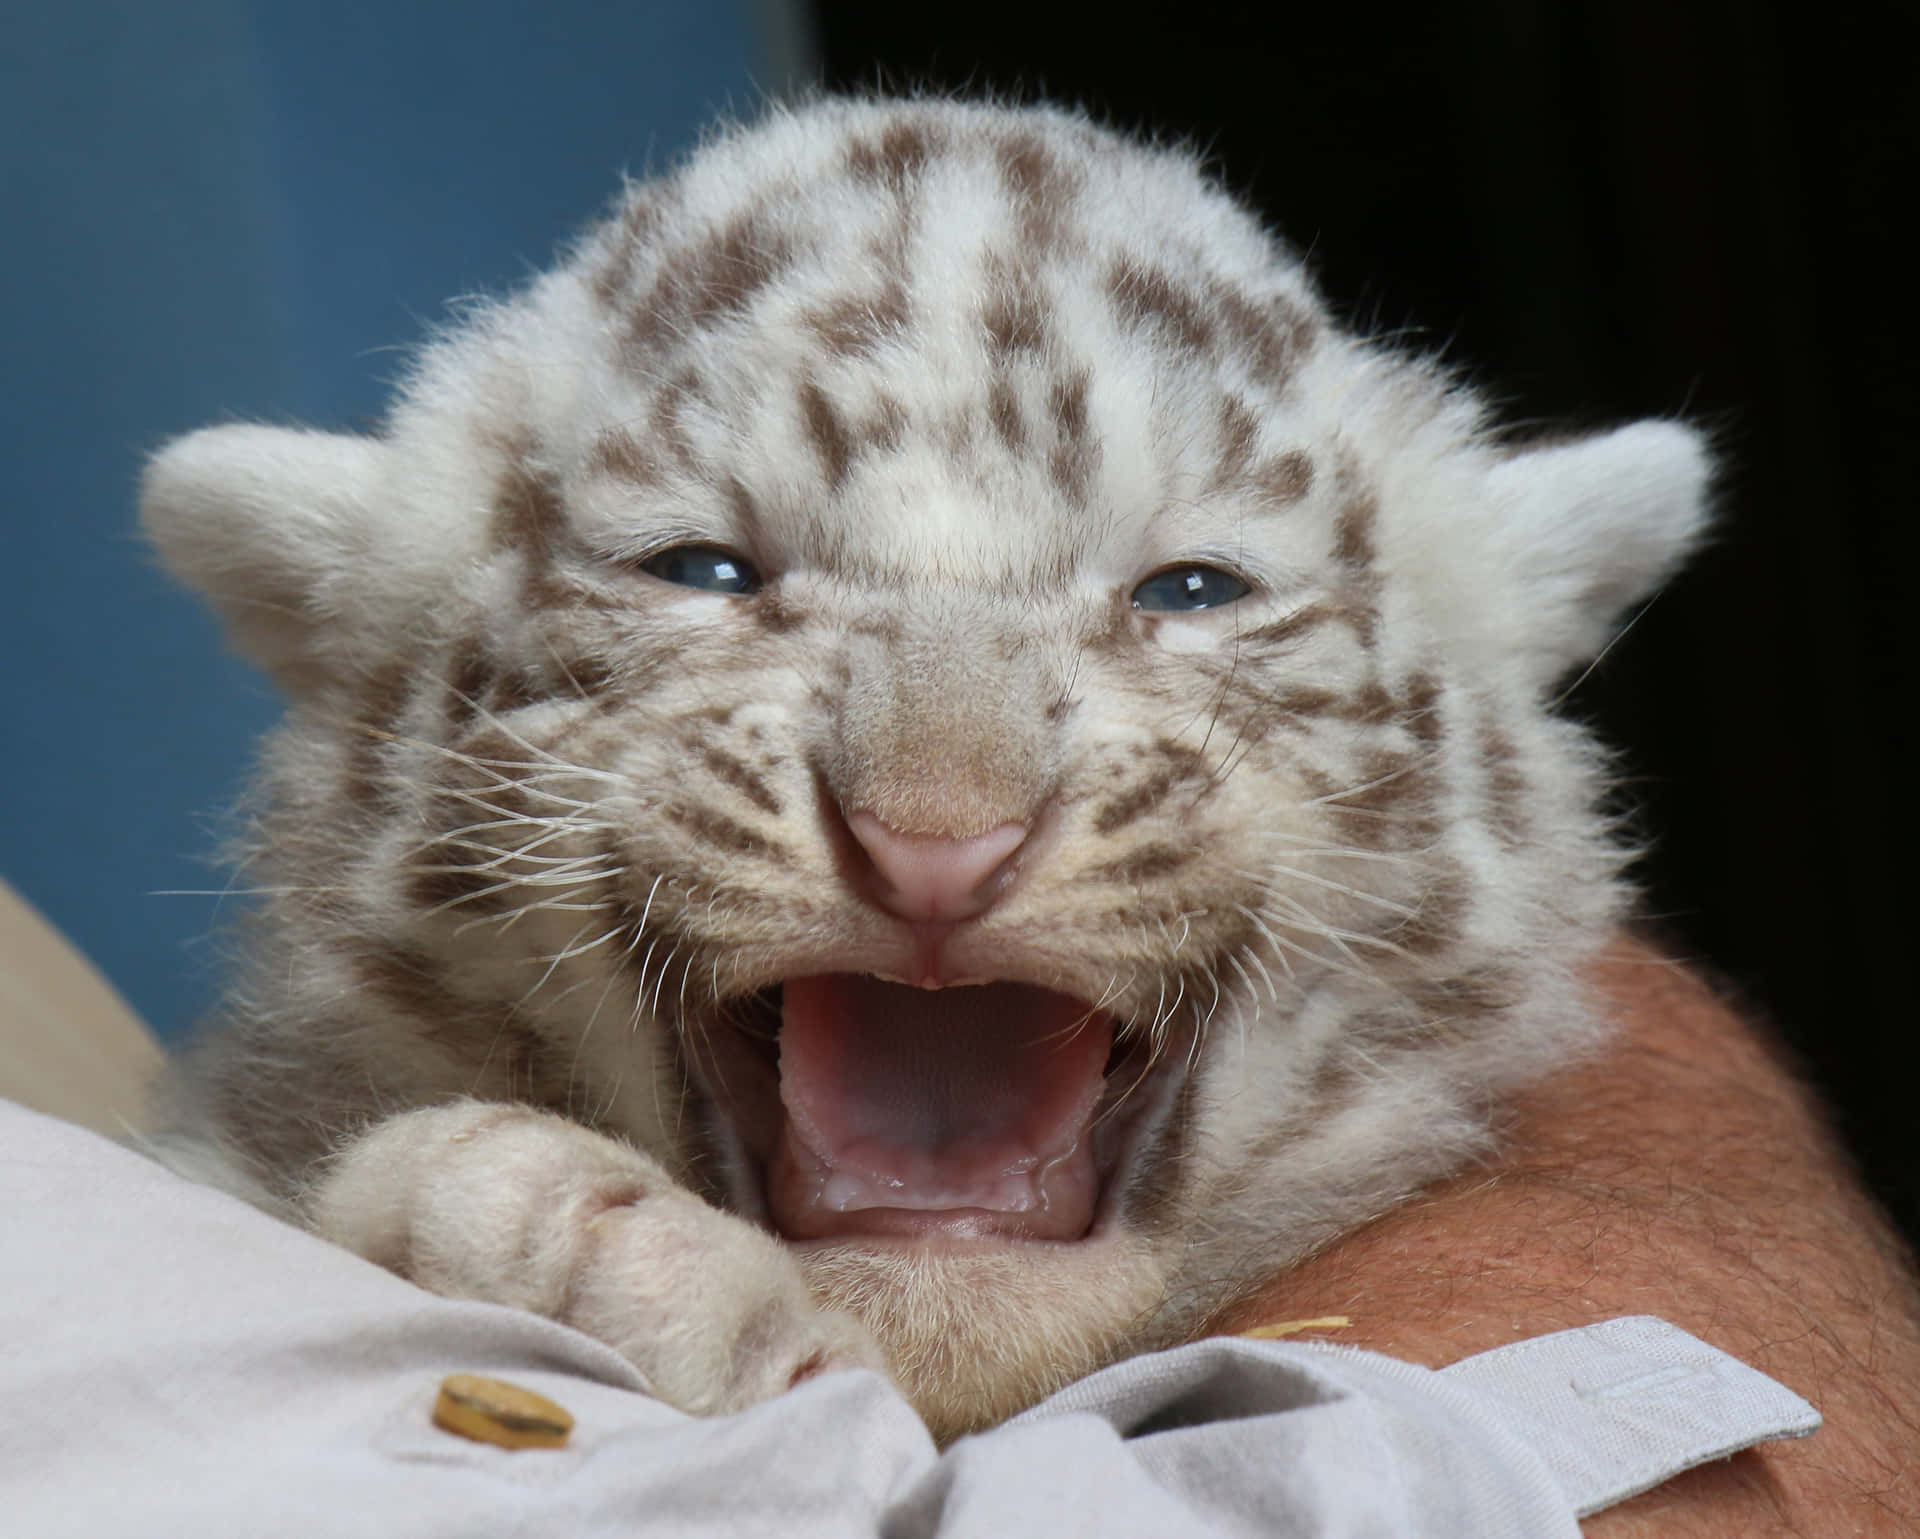 Bedårandemodiga Baby Tiger Ler Stort Och Ger Betraktaren En Glimt Av Vildmarkens Naturliga Skönhet.